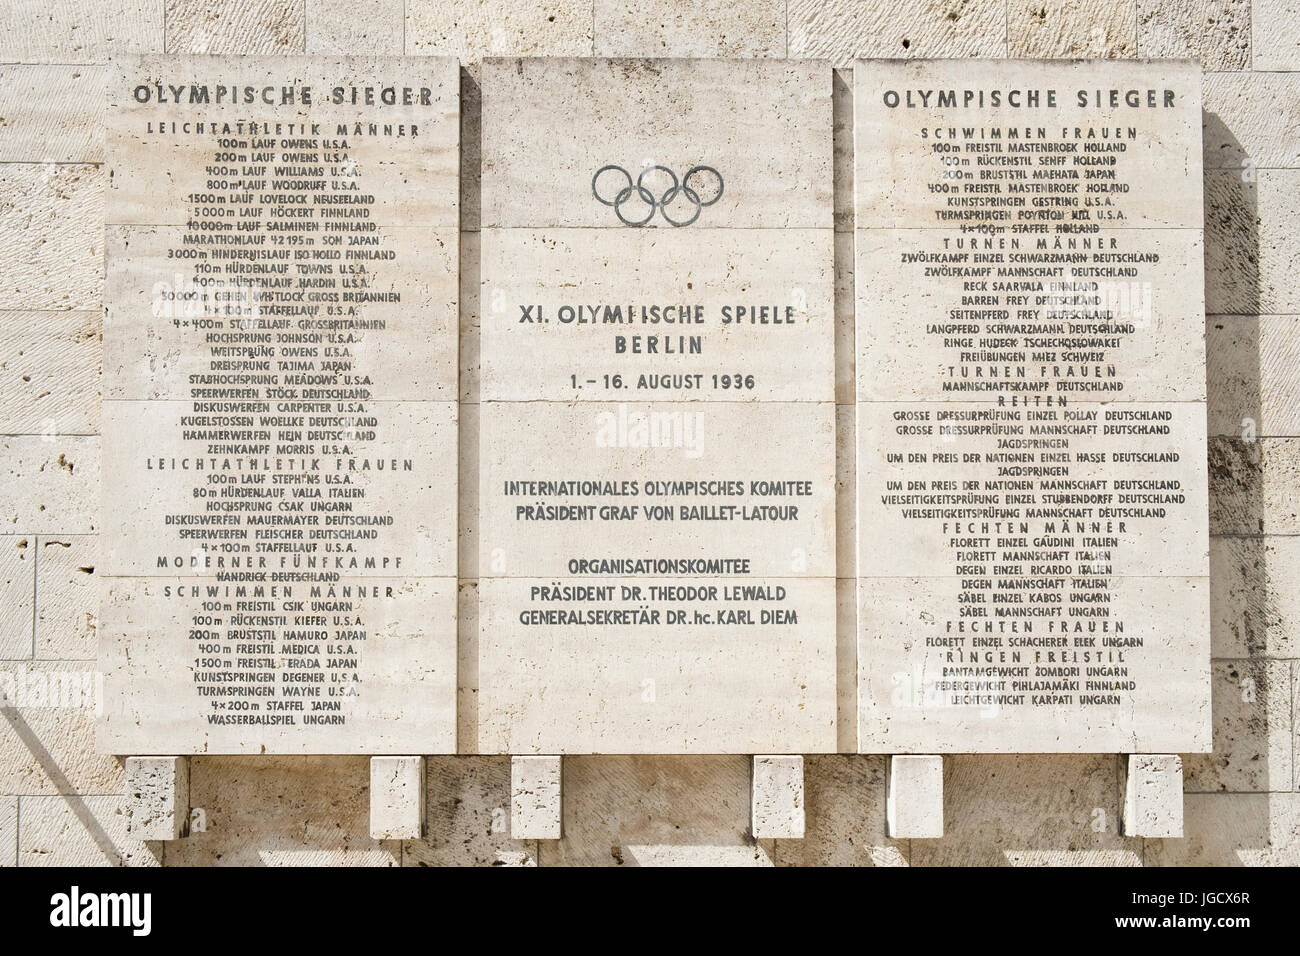 Des plaques commémorant les Jeux Olympiques de 1936 à Berlin Olympiastadion (stade Olympique) à Berlin, Allemagne Banque D'Images